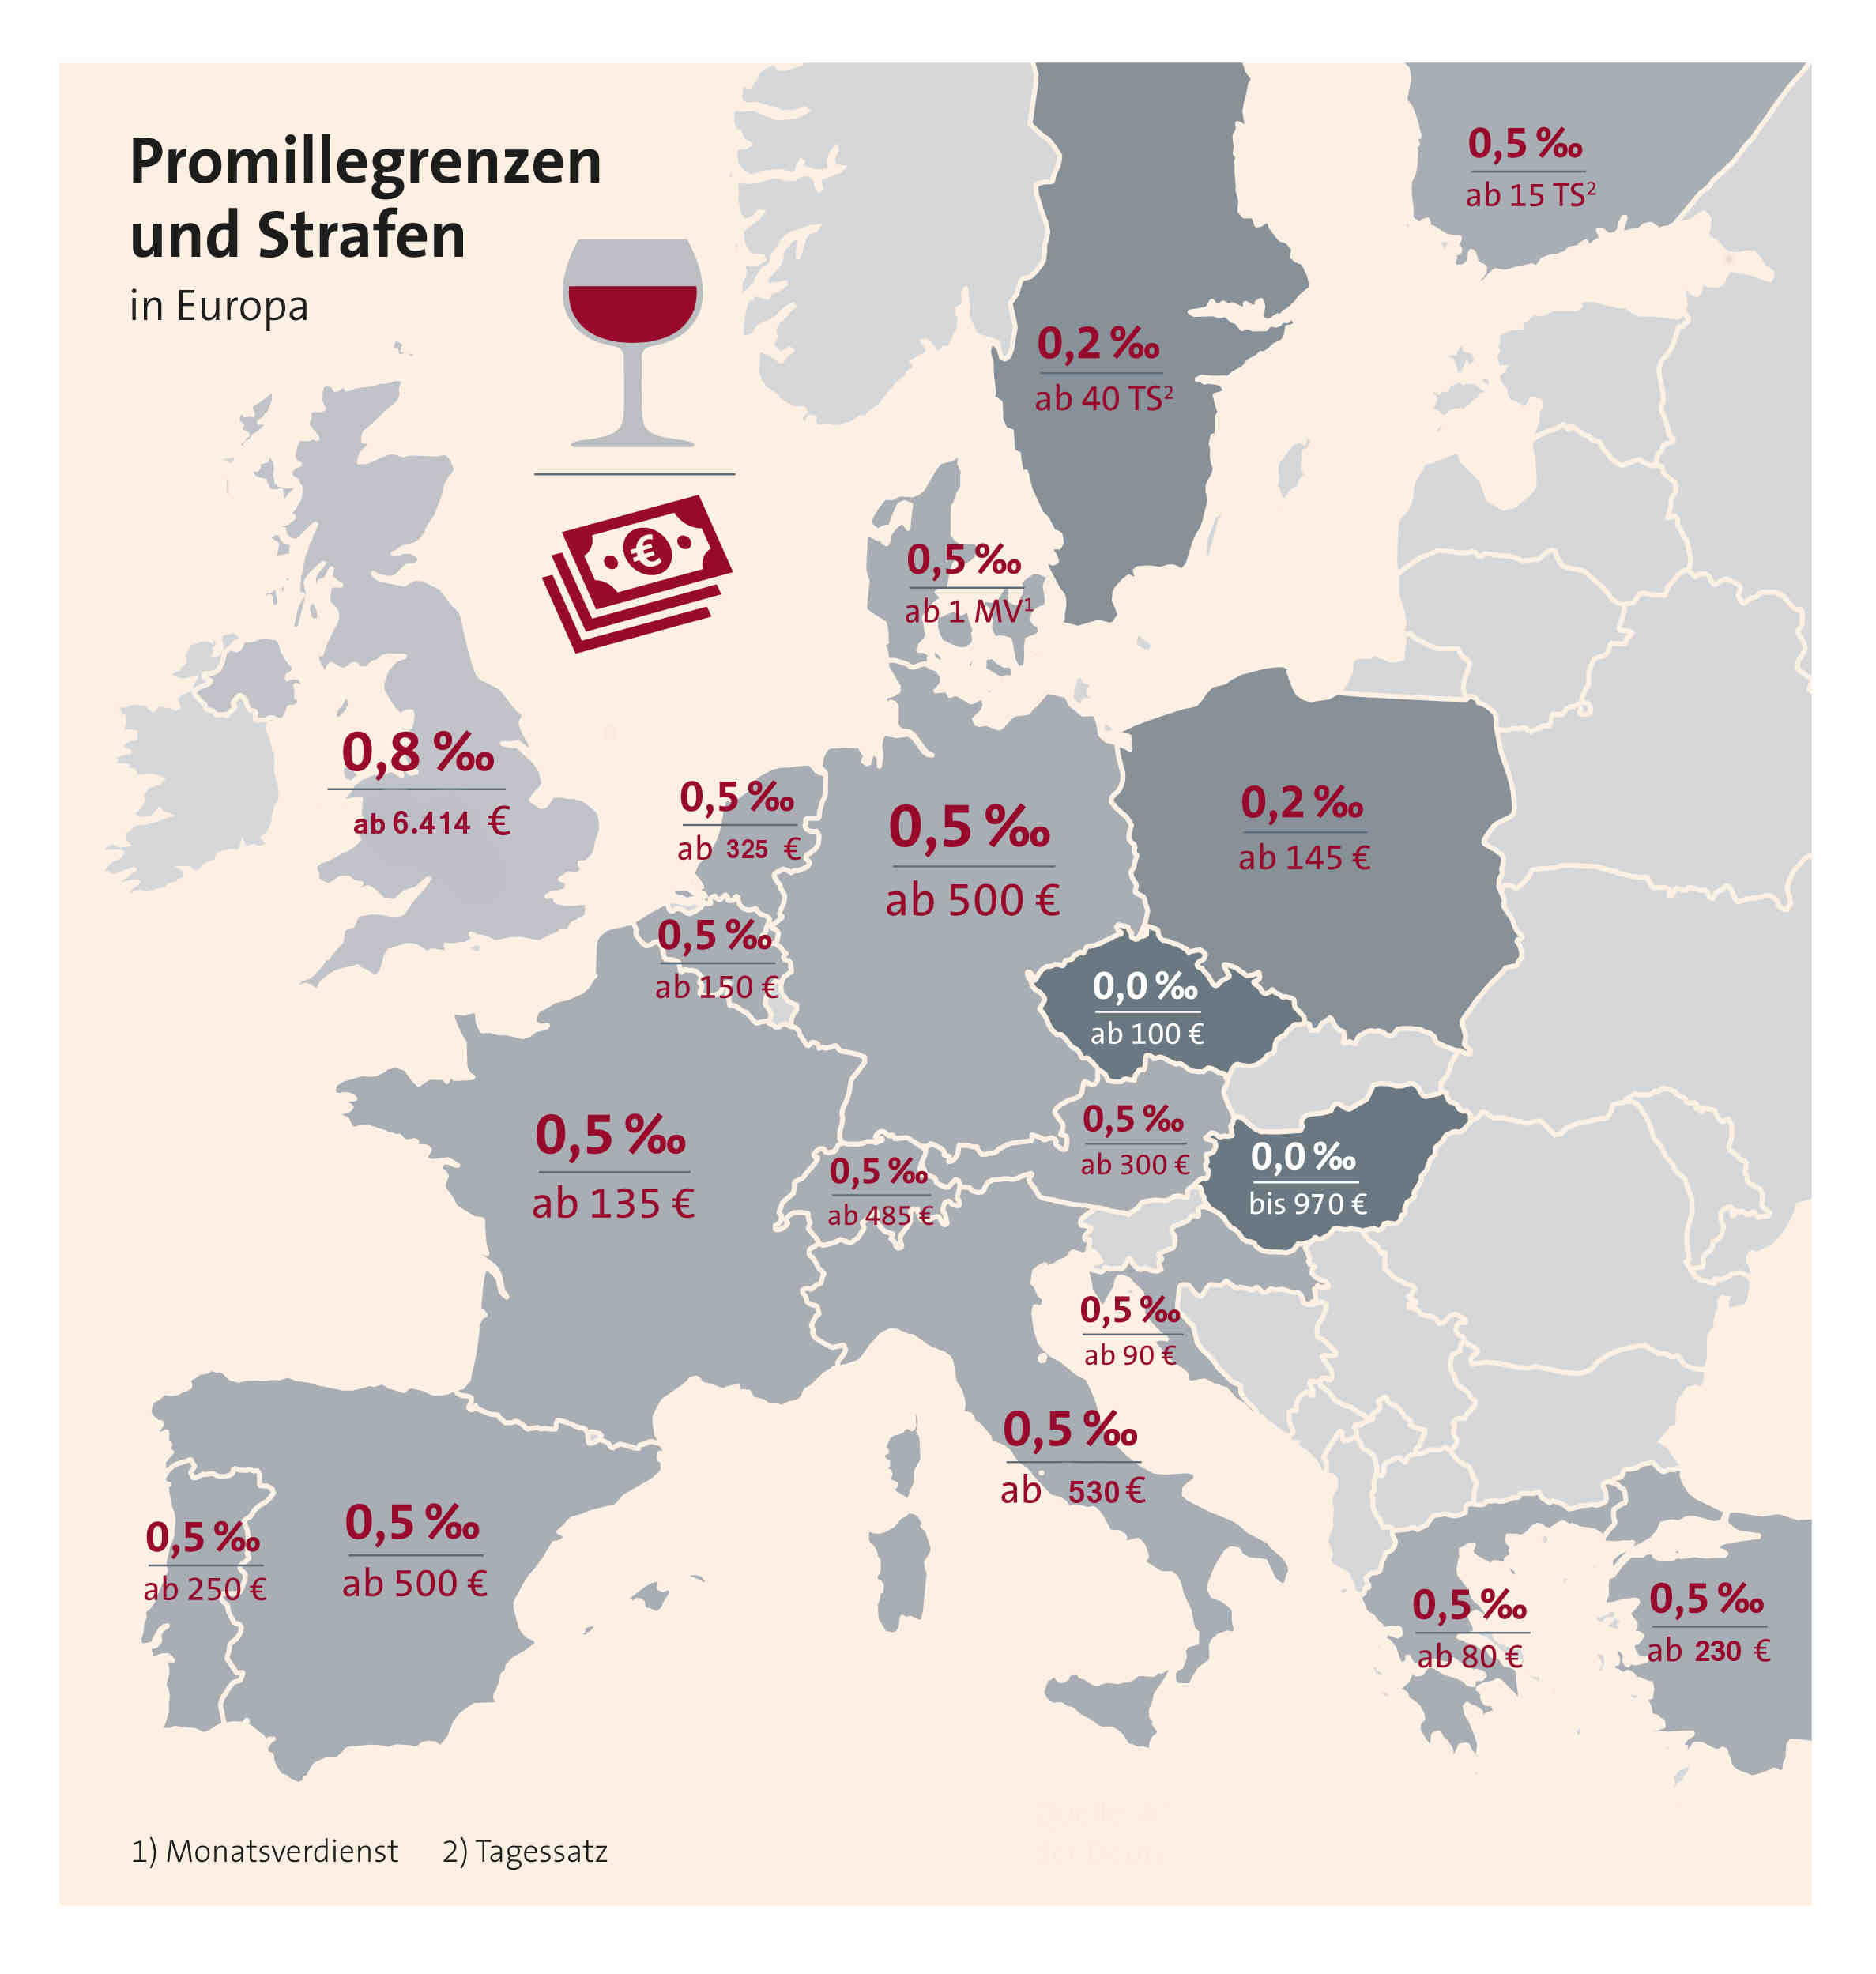 Promillegrenze und Straffen in Europa